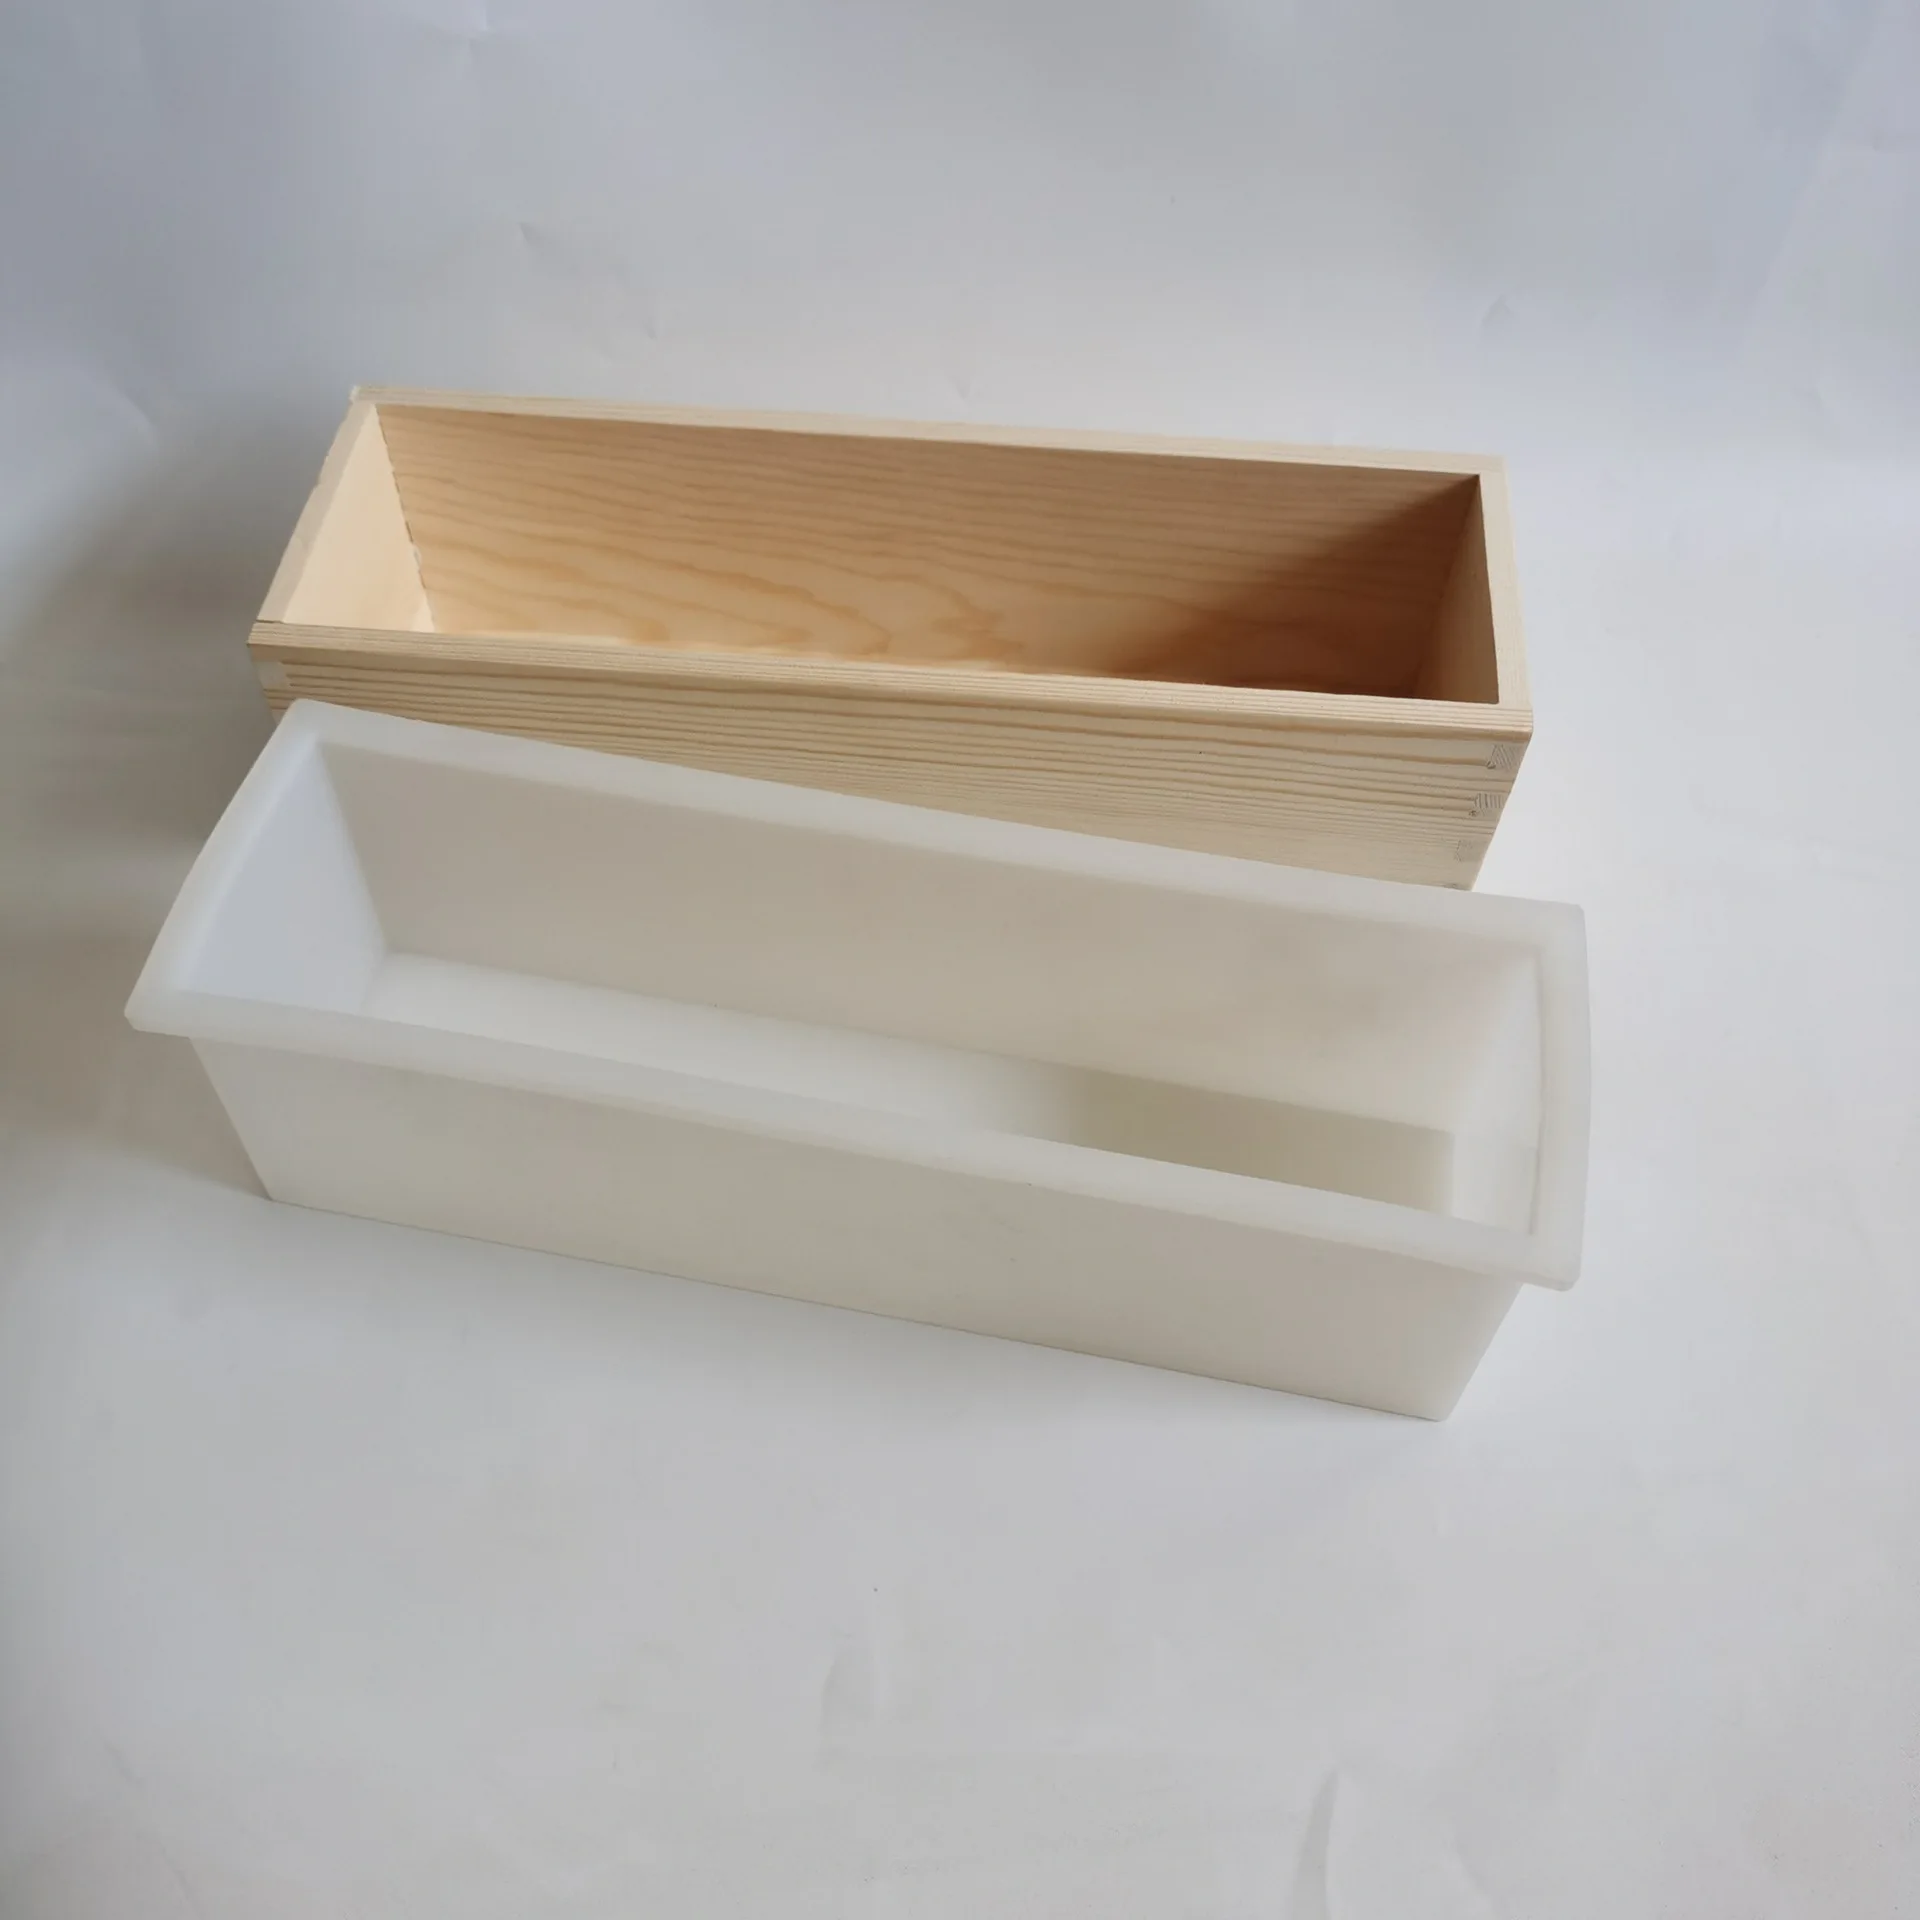 Прямоугольный гибкий инструмент для мыловарения, Силиконовая форма, Деревянный ящик для хранения 